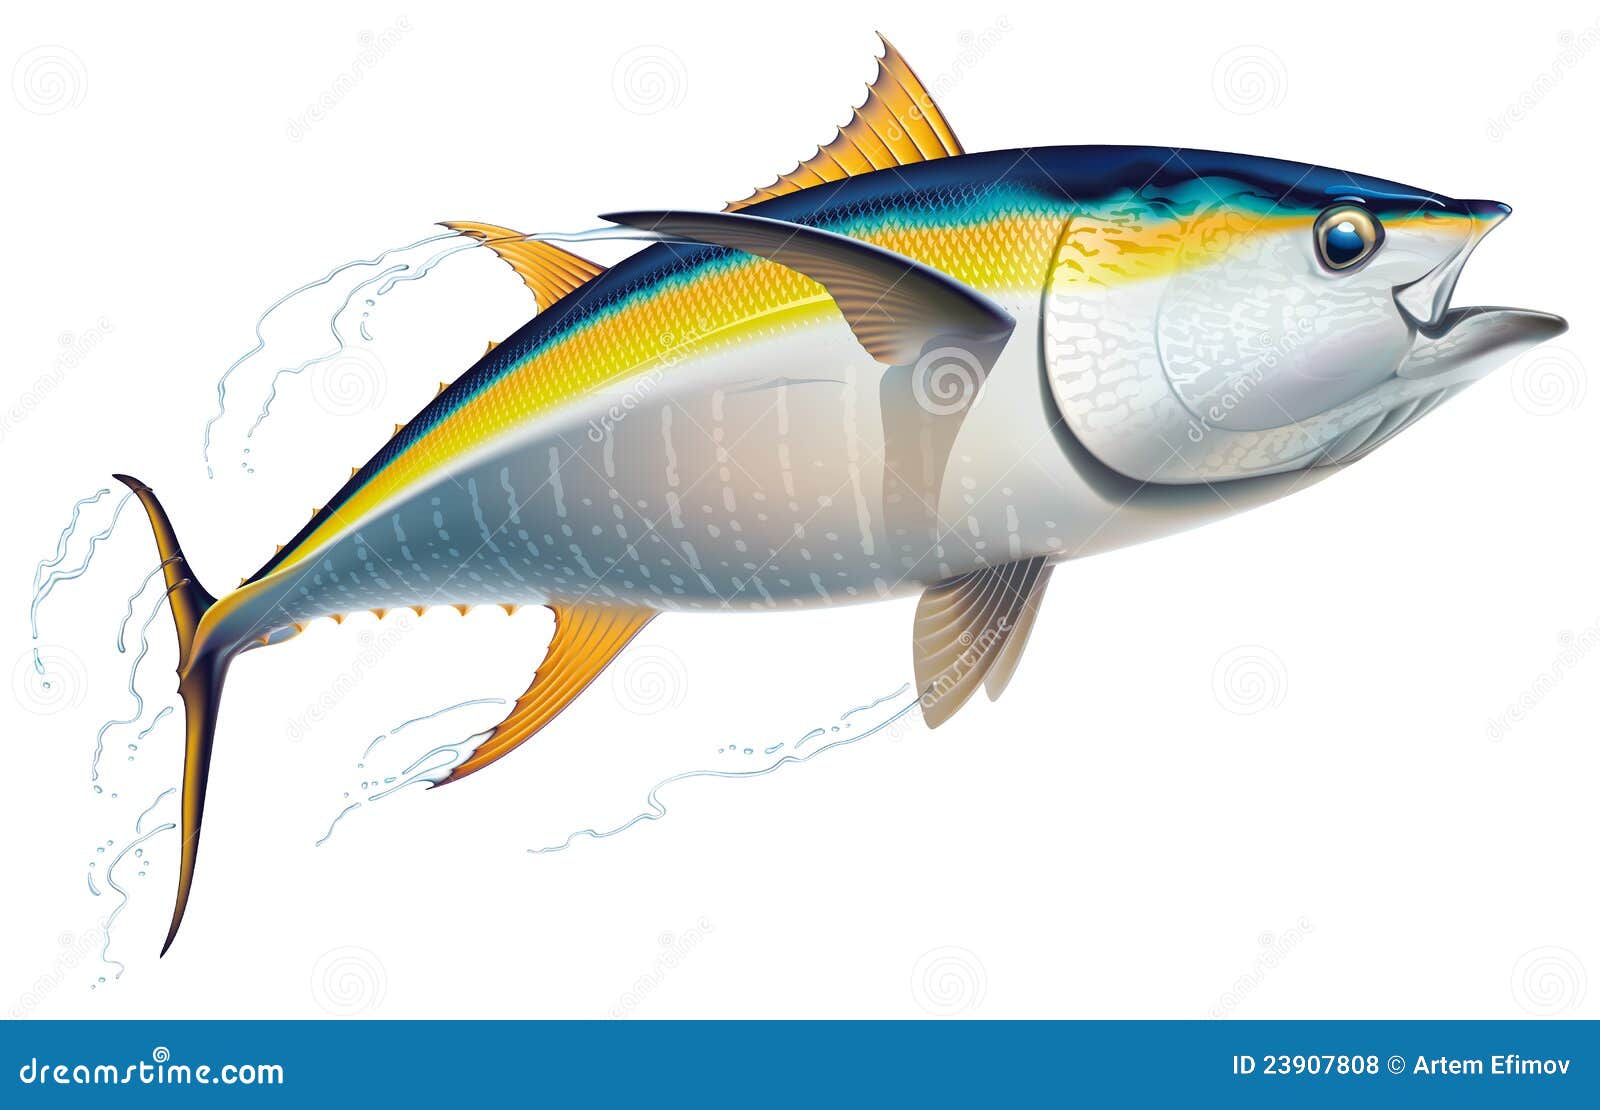 Swordfish: Habitat, Behavior, and Diet